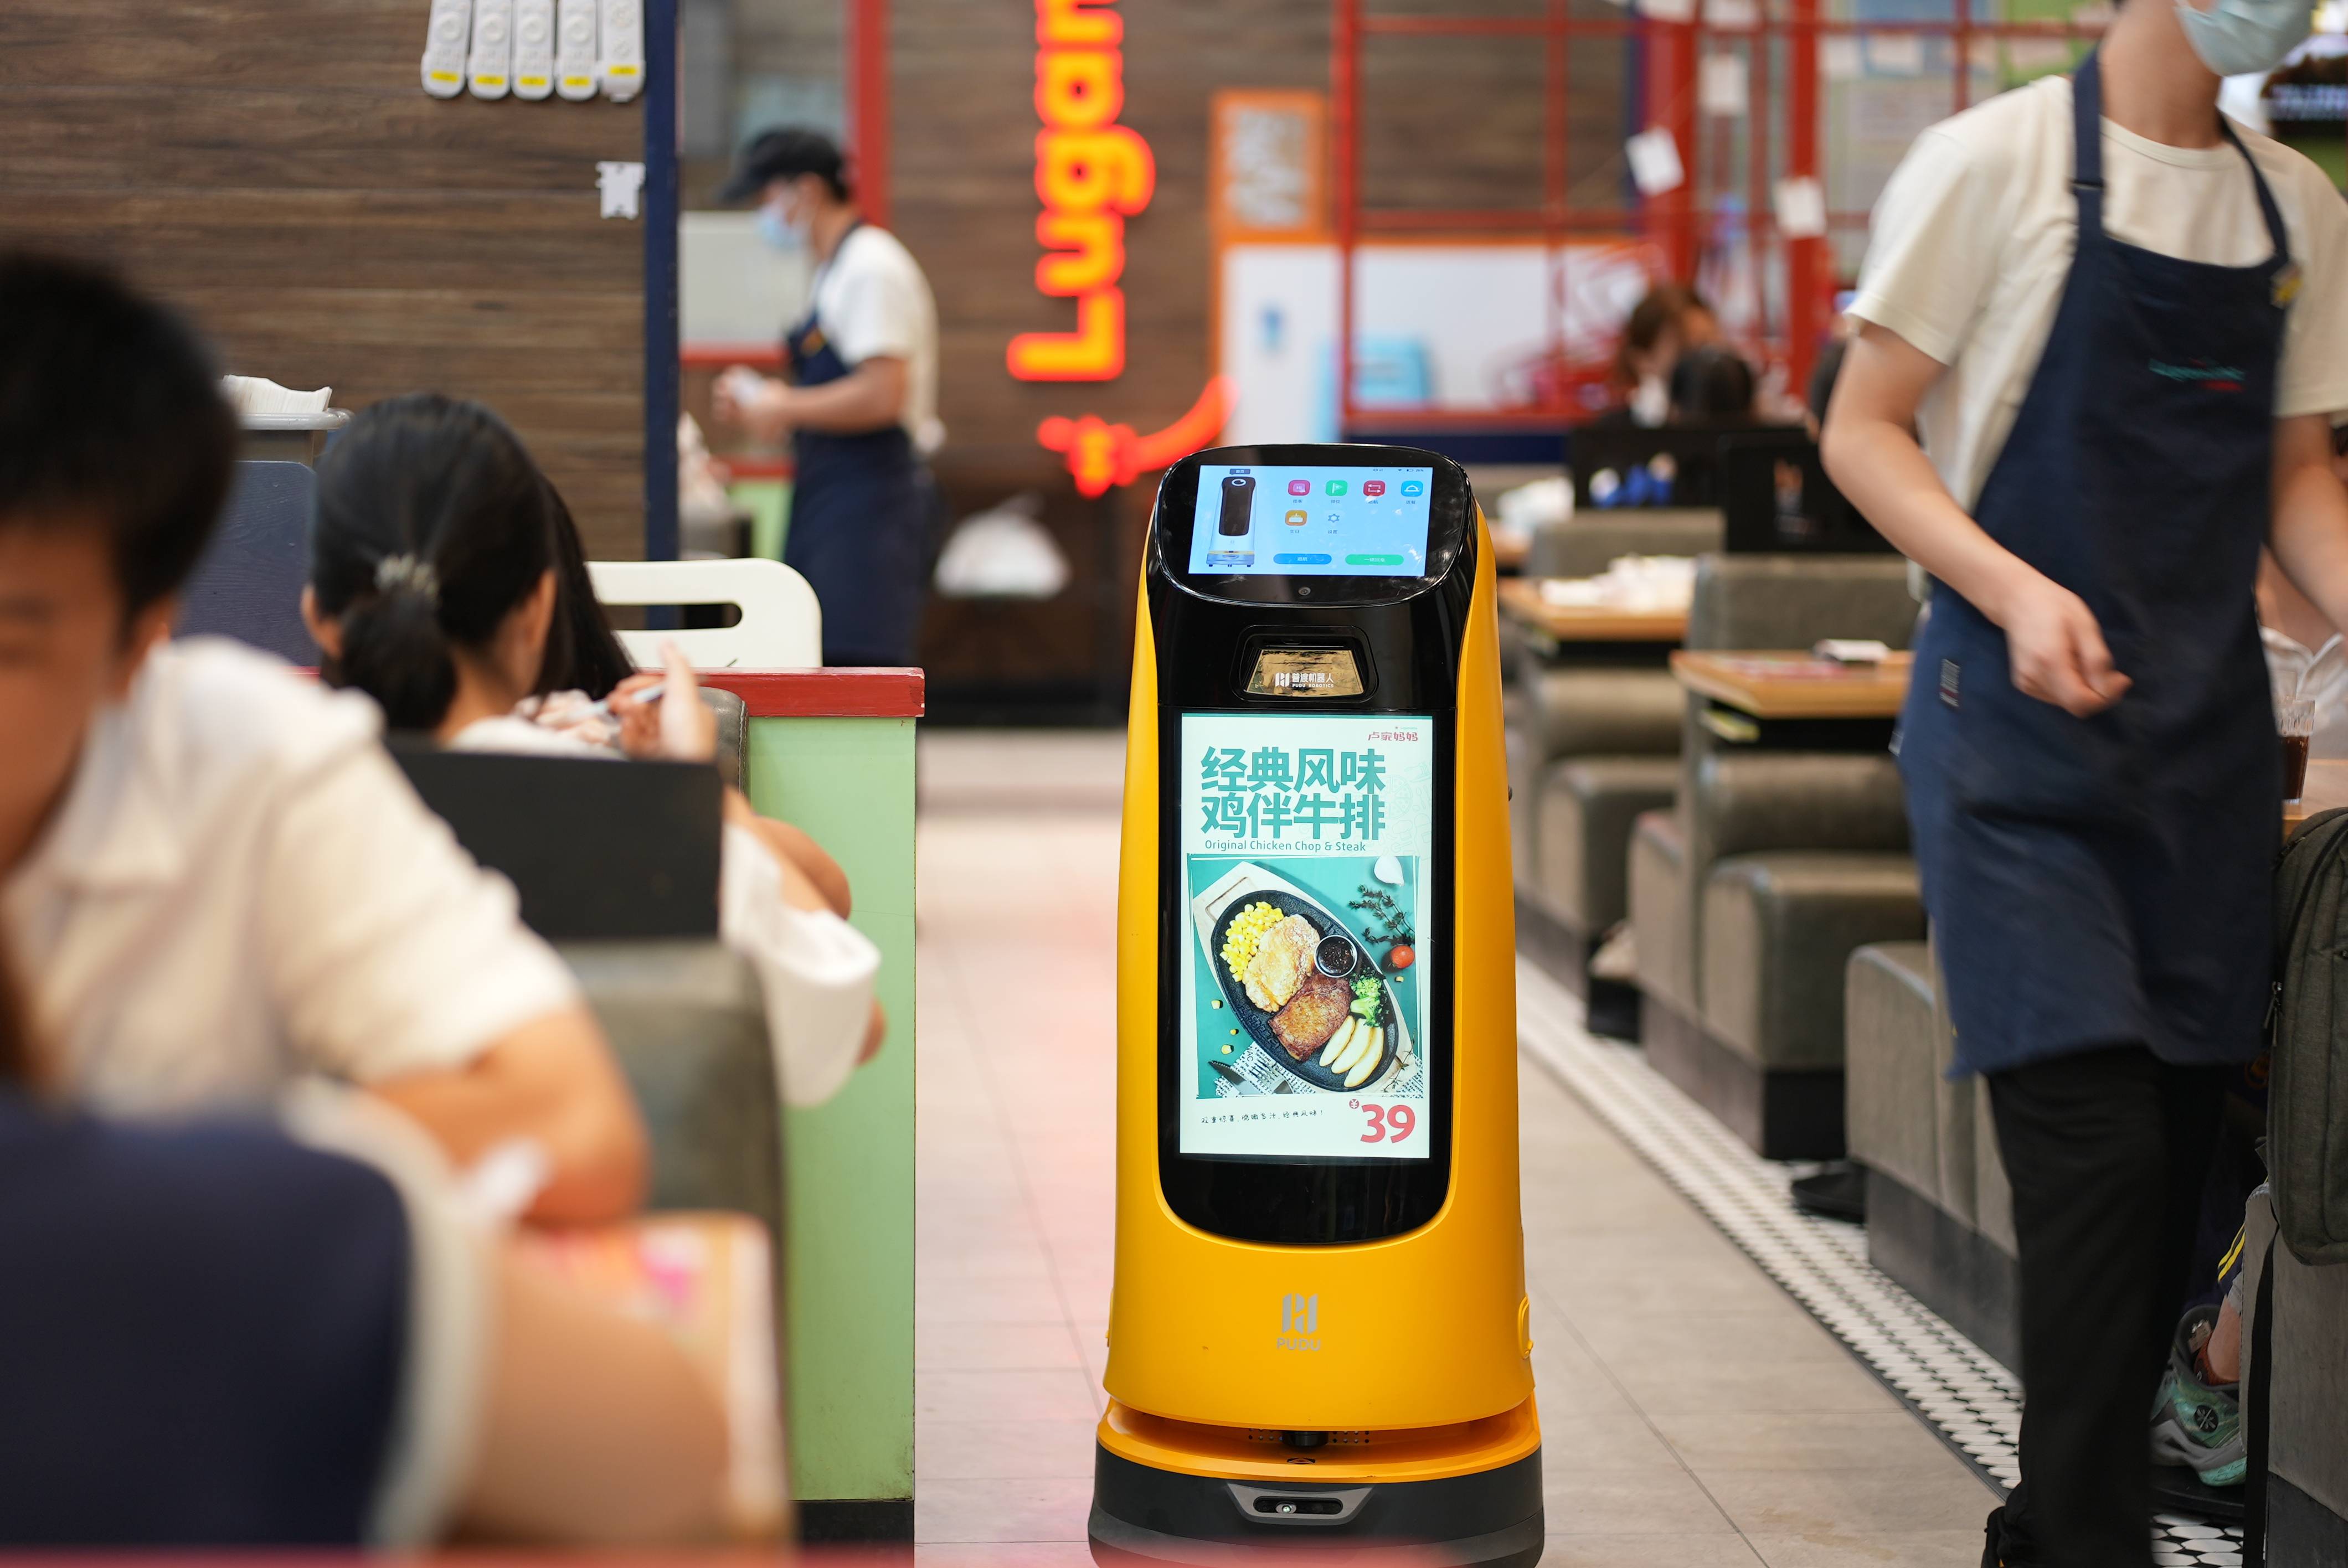 人工智能餐饮机器人图片